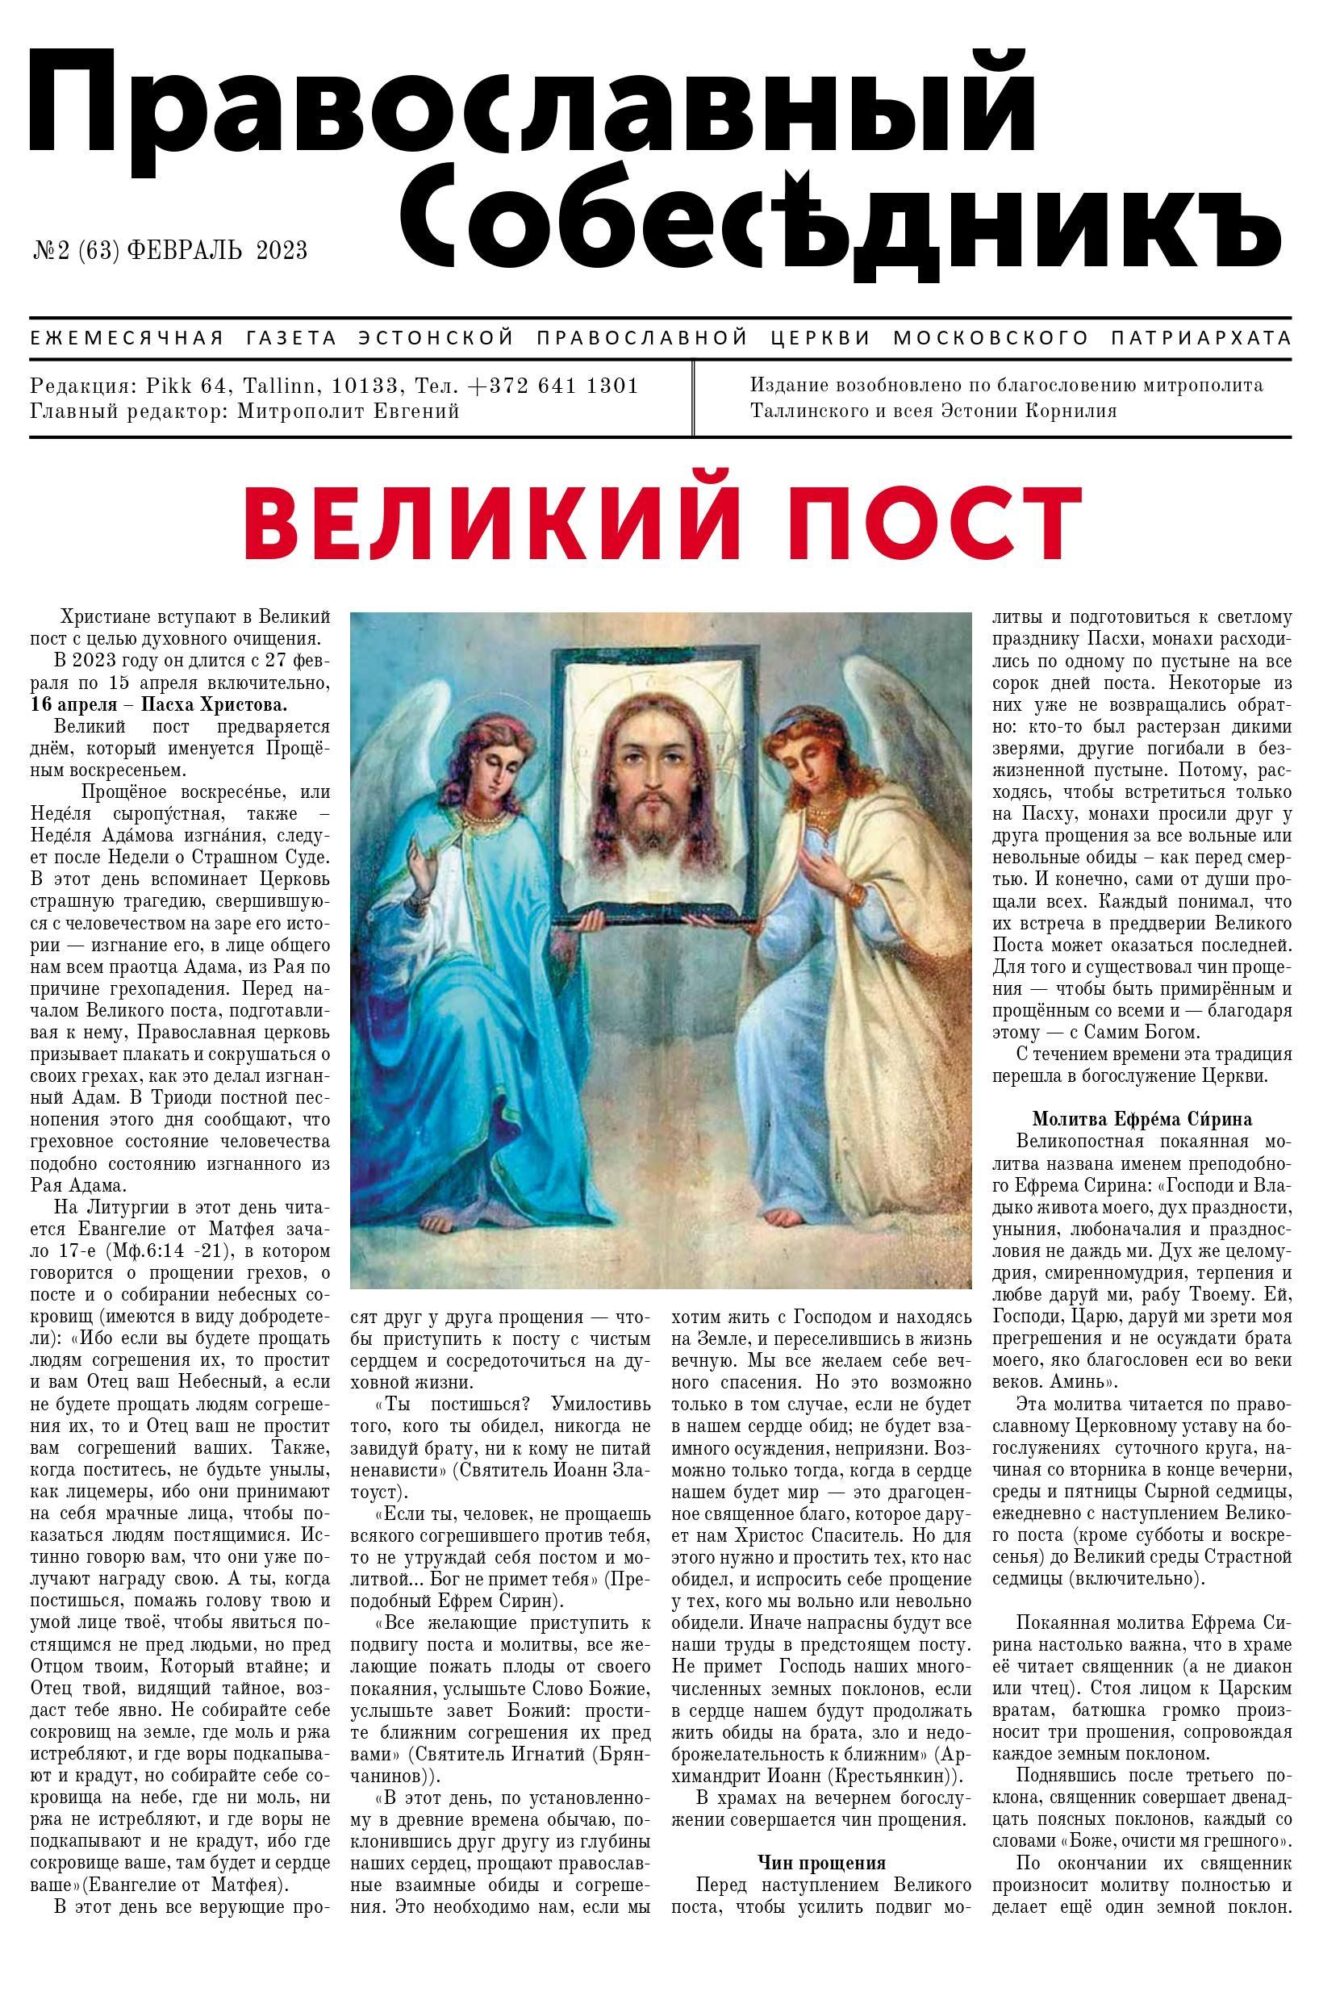 Православный Собеседник, февраль 2023. Обложка